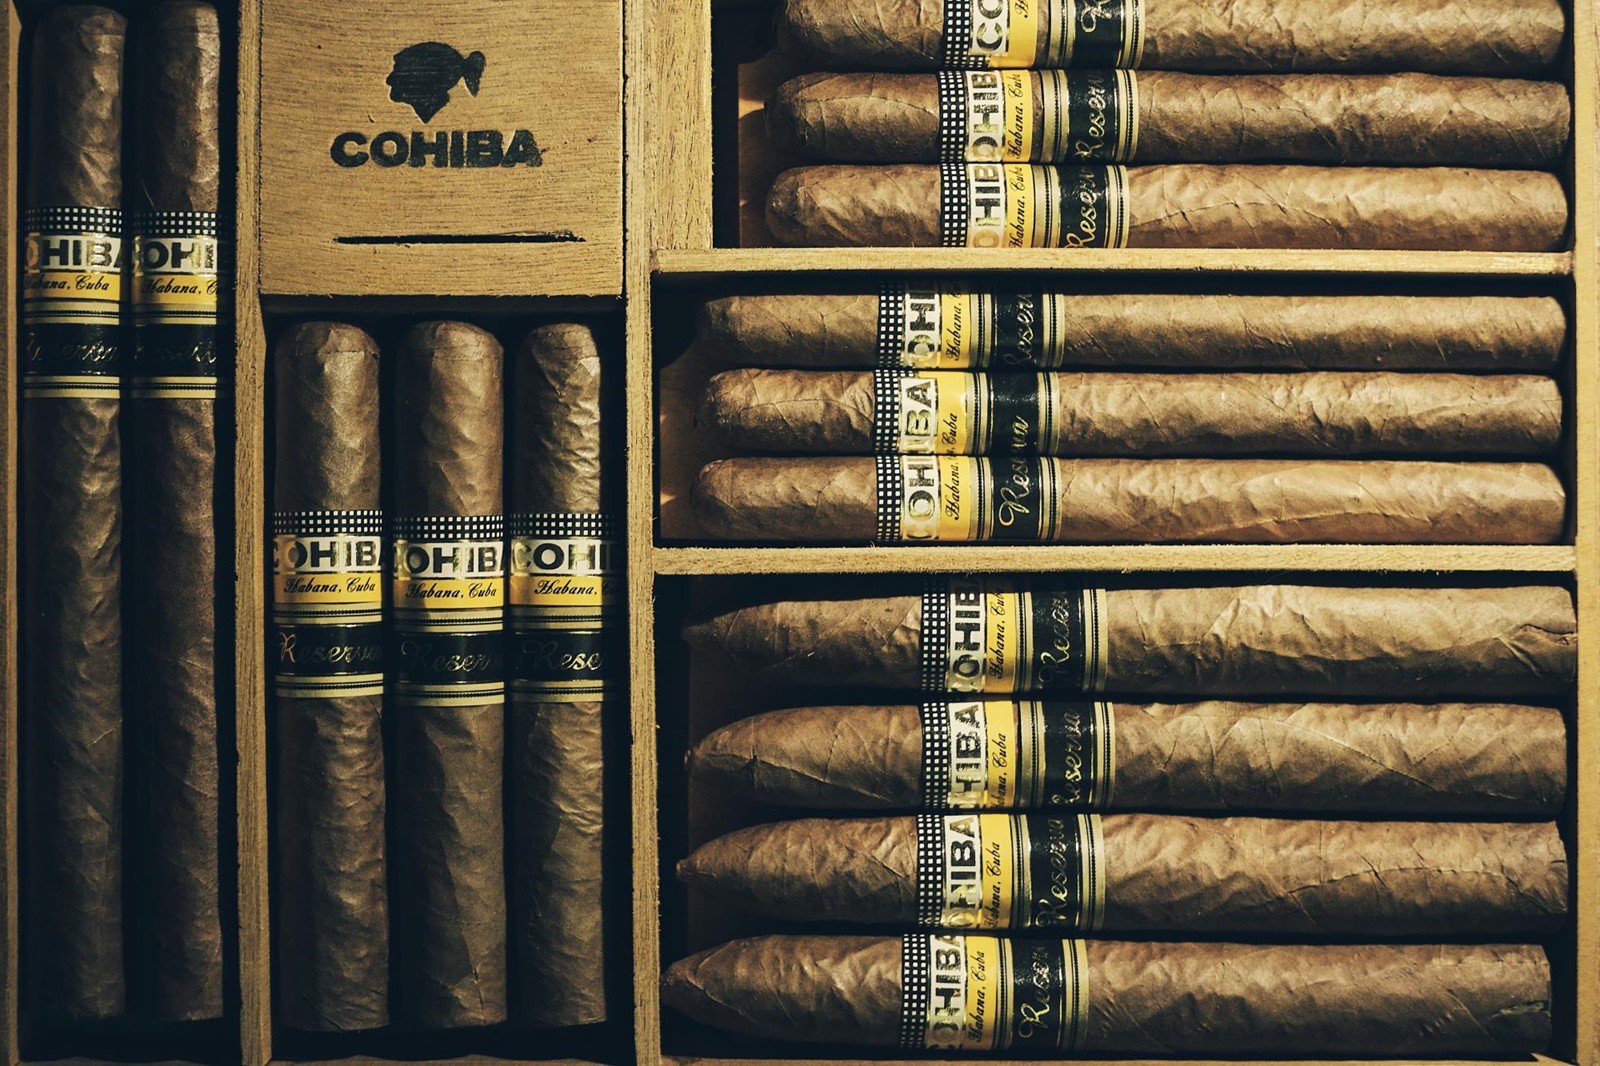 cigar  Cohiba Superstar